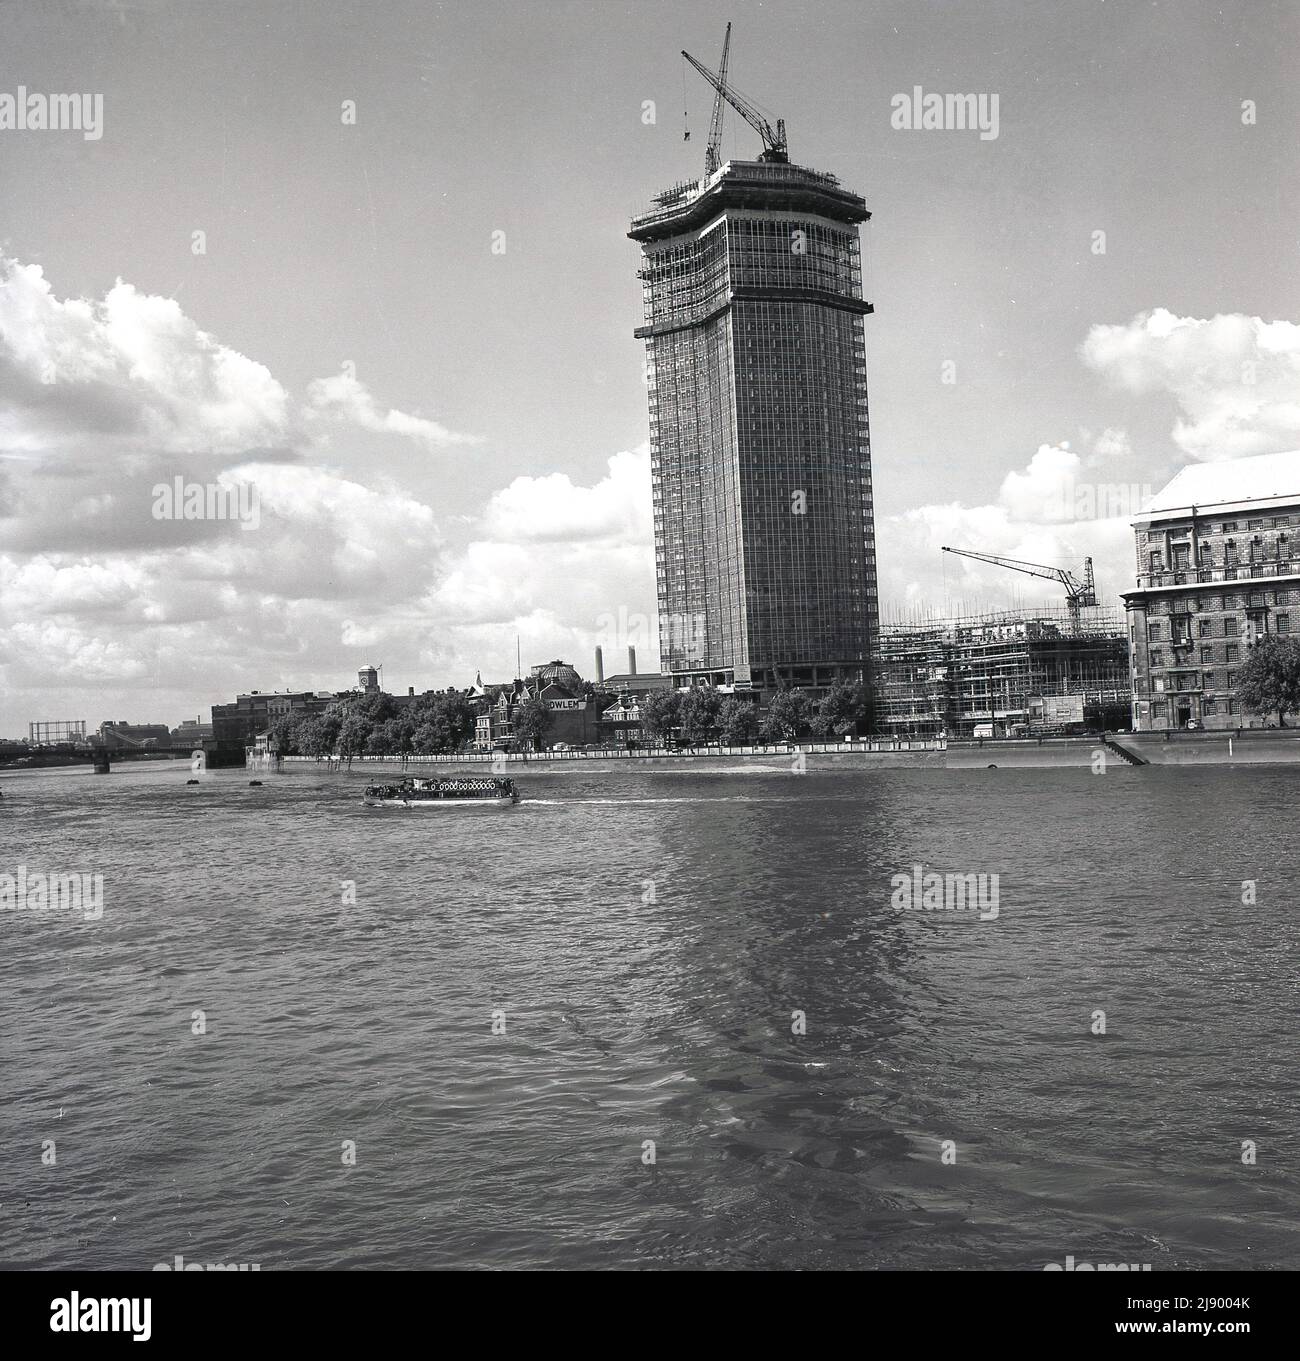 1962, historisch, Blick von der Themse auf ein neues Bürohochhaus im Bau am Südufer des Flusses, London, England, Großbritannien. Erbaut von John Mowlem & Co für das britische Ingenieurbüro Vickers und ursprünglich als Vickers House oder Tower bekannt, wurde es später als Millbank Tower bekannt. Der Bau dieses modernen Wolkenkratzers begann 1959 und wurde nach seiner Fertigstellung 1963 mit 387ft Jahren zum höchsten Gebäude in Großbritannien. Im Jahr 1990s wurde das Gebäude als Hauptquartier der Labour Party bekannt. Es wurde im Jahr 1995 gelistet. Stockfoto